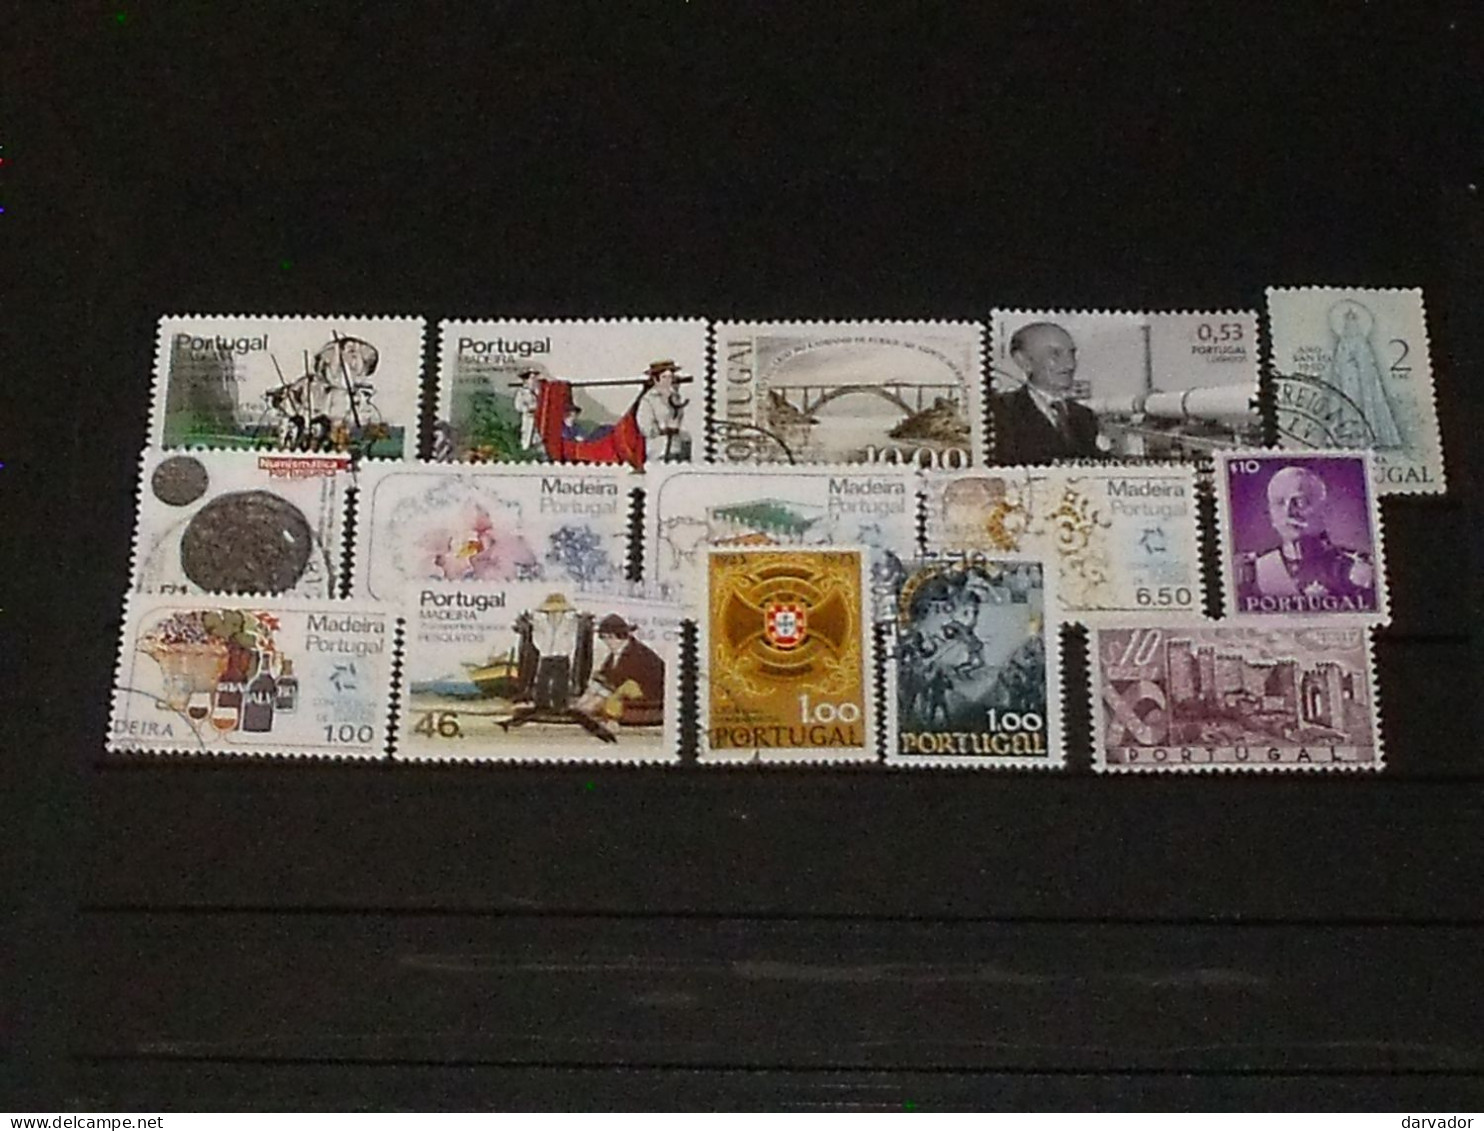 CAISSE BLEU / PORTUGAL  : divers timbres tous oblitérés  TTB